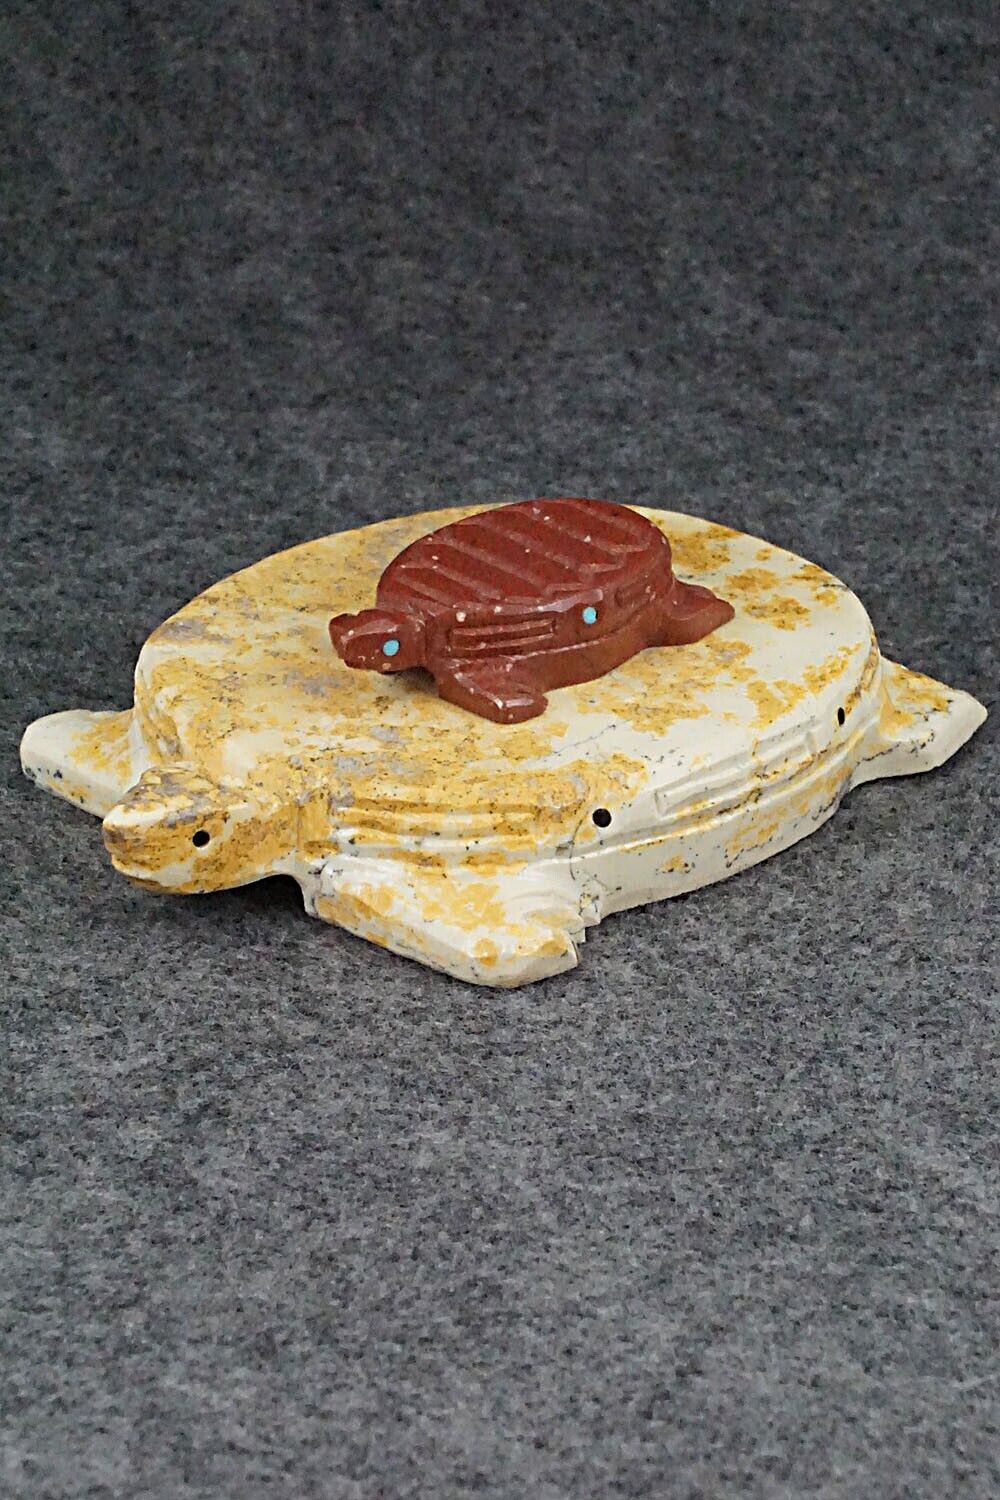 Turtles Zuni Fetish Carving - Jesus Espino